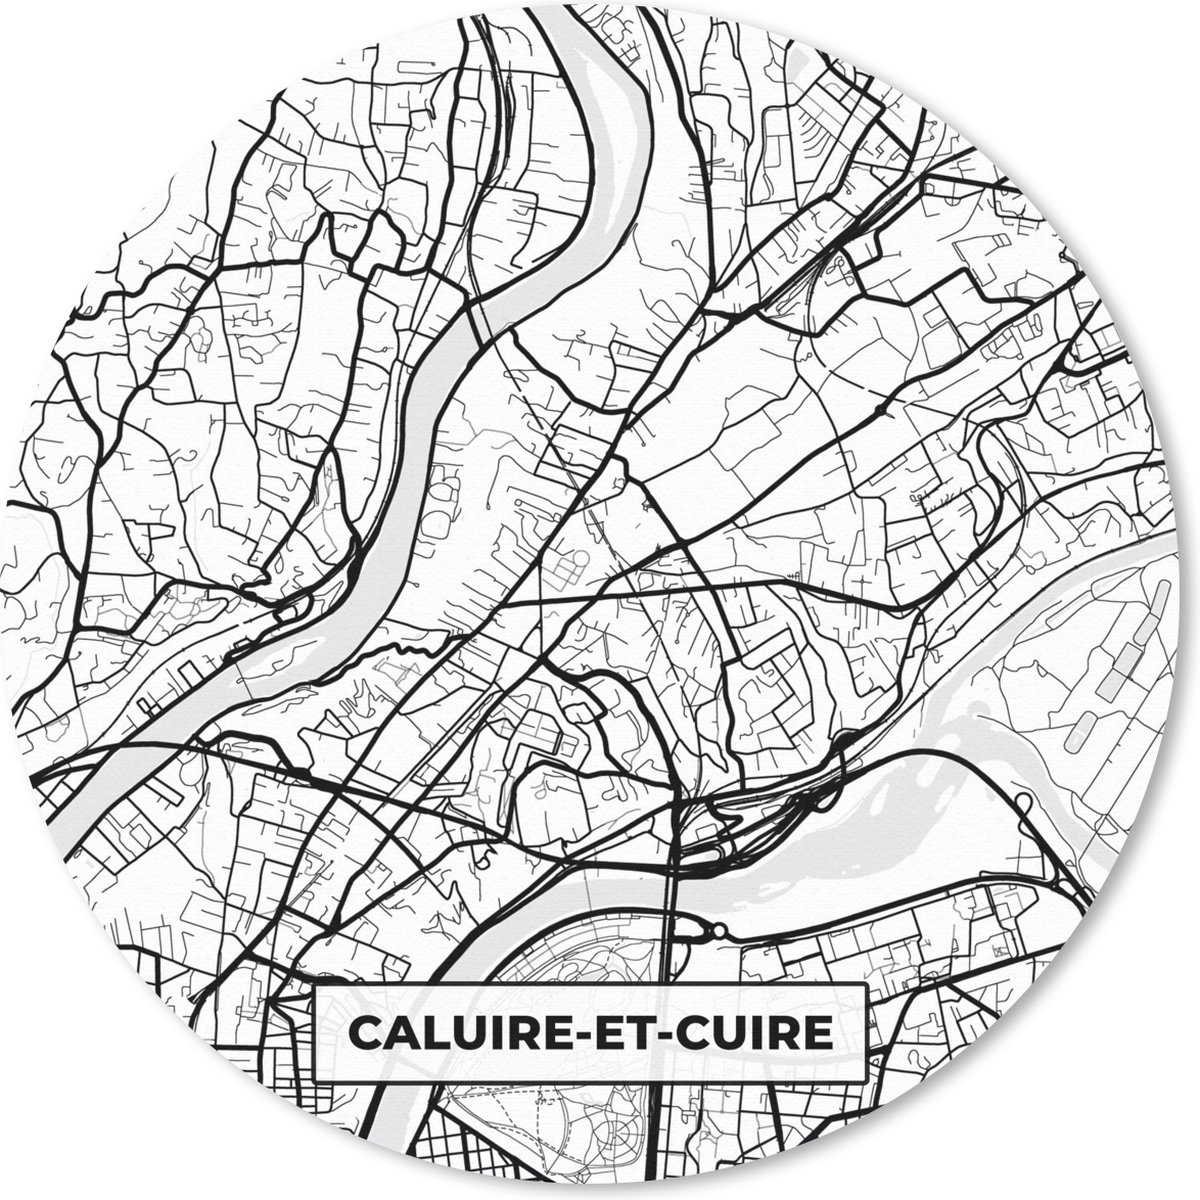 Muismat - Mousepad - Rond - Stadskaart - Plattegrond - Caluire-et-Cuire - Kaart - Frankrijk - Zwart wit - 50x50 cm - Ronde muismat